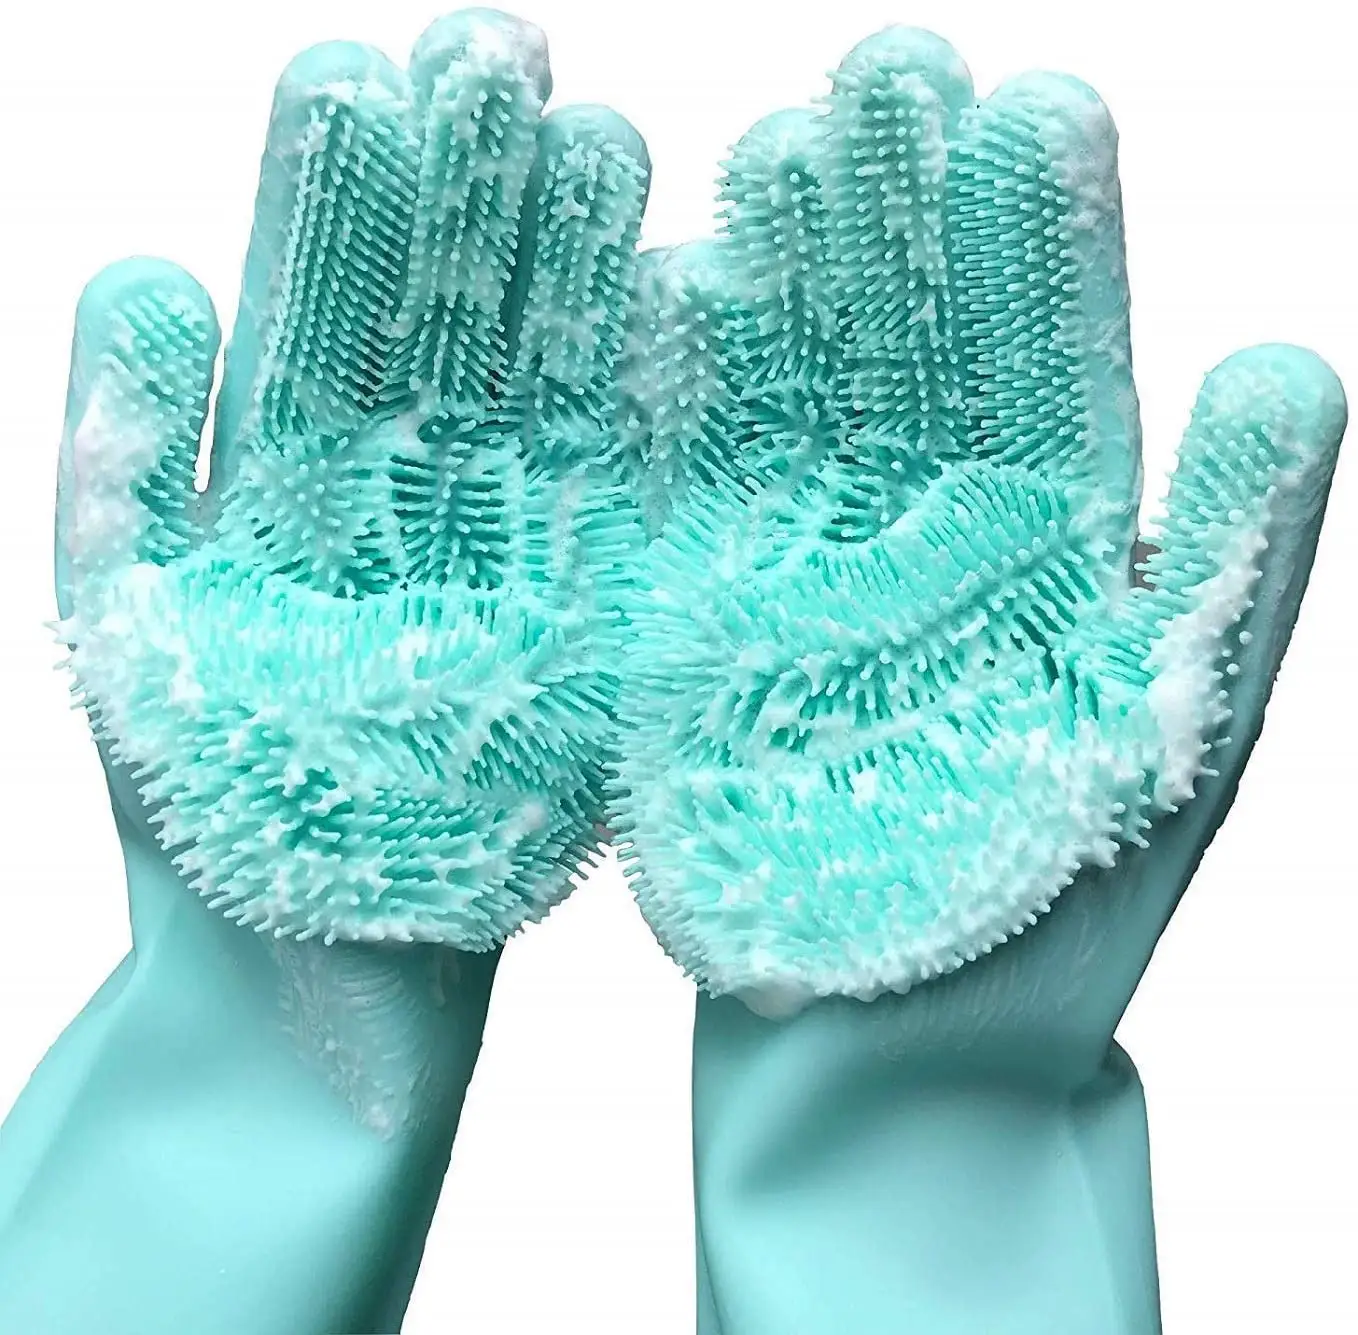 Haushalts küche Lebensmittel qualität Hitze beständige Silikon-Wasch geschirr Schrubb handschuhe